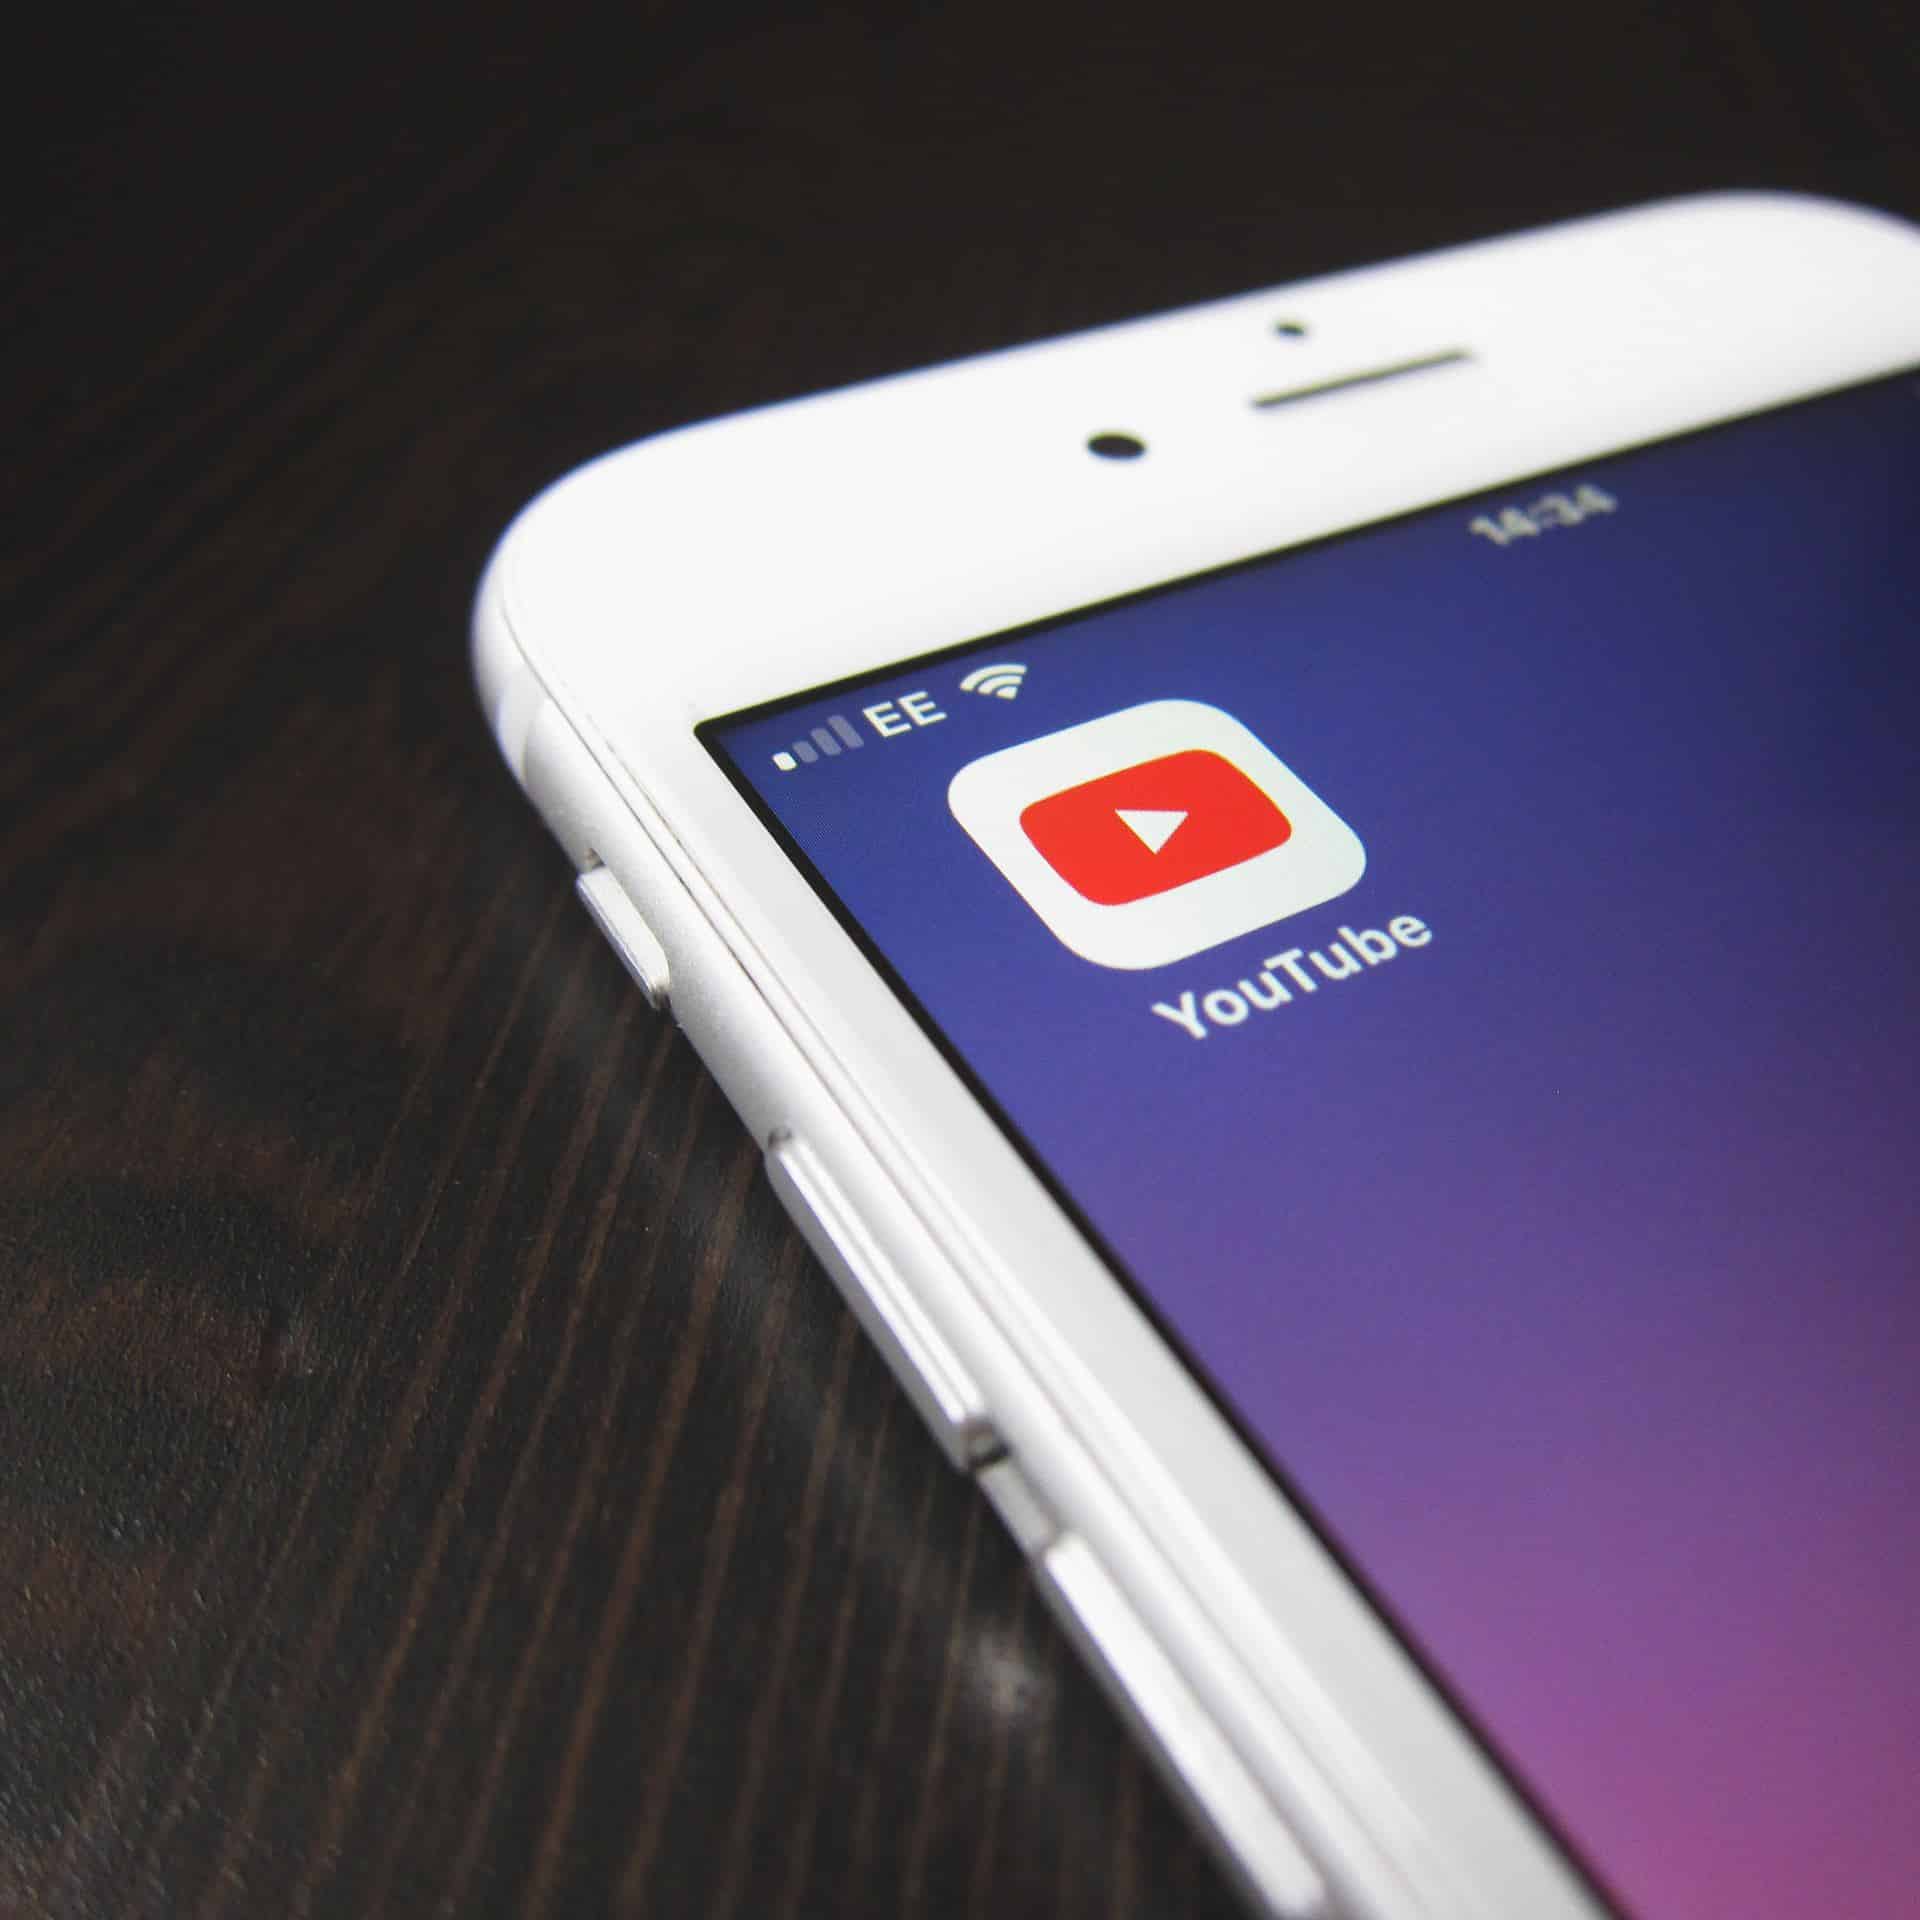 youtube lance une fonctionnalité pour contrôler la consommation de video